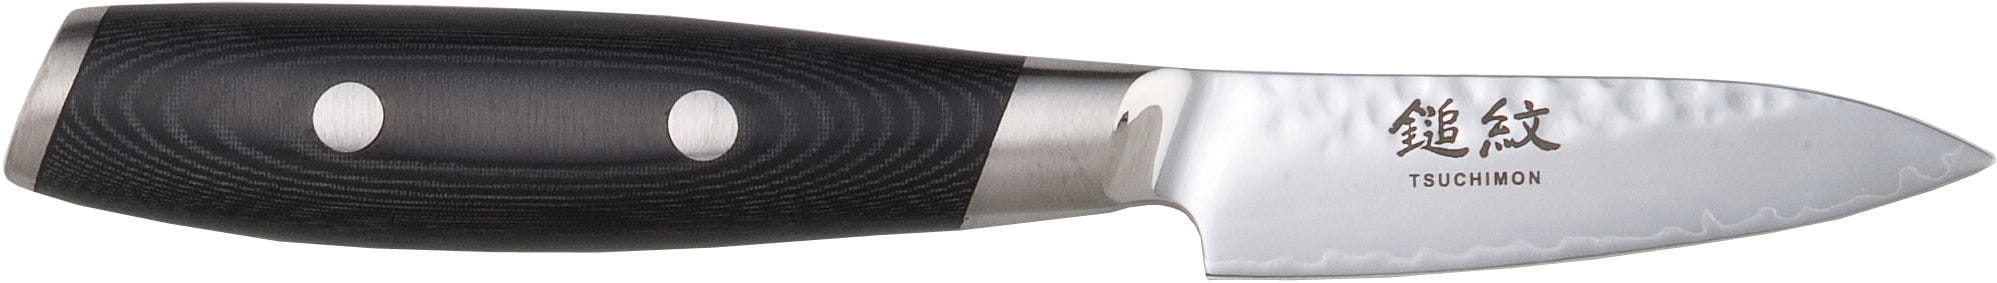 Cuchillo de corte de Yaxell Tsuchimon, 8 cm